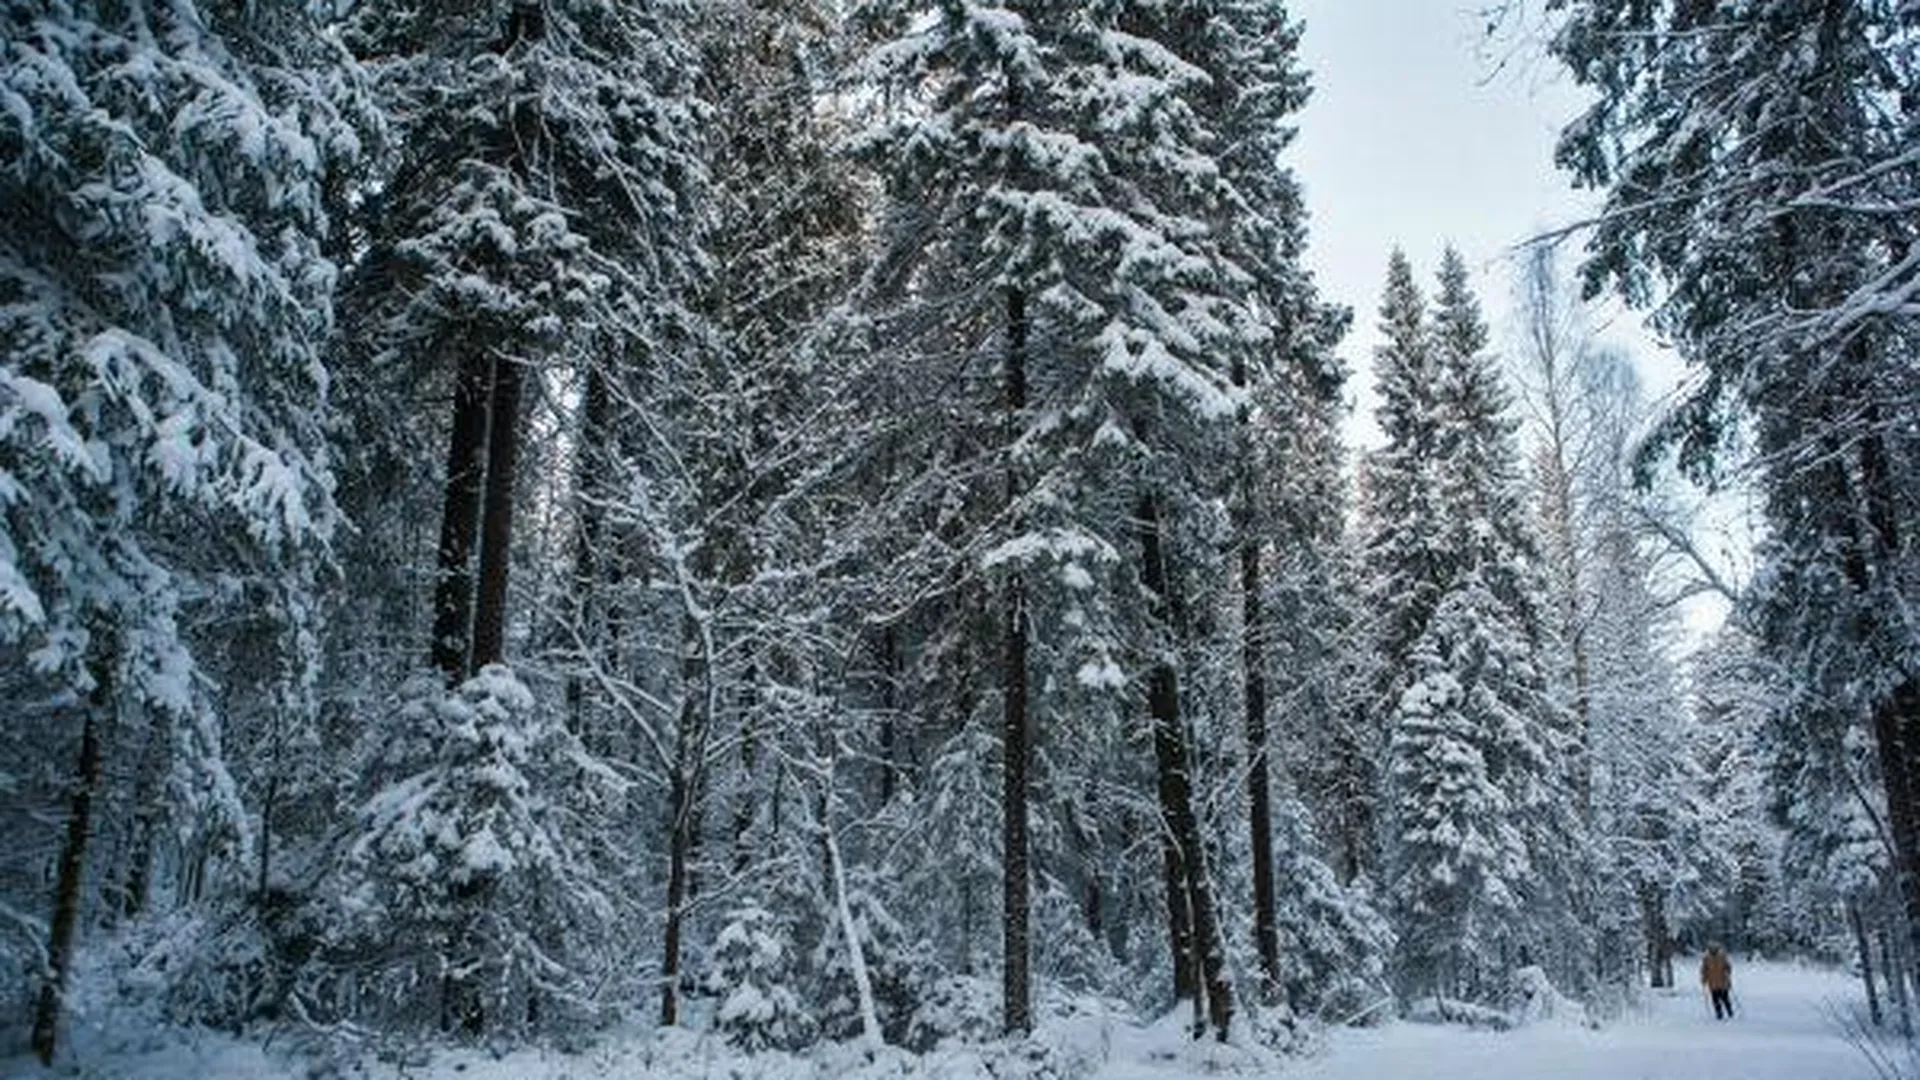 Чупраков: основная задача Комлесхоза в 2016 году – лесовосстановление 